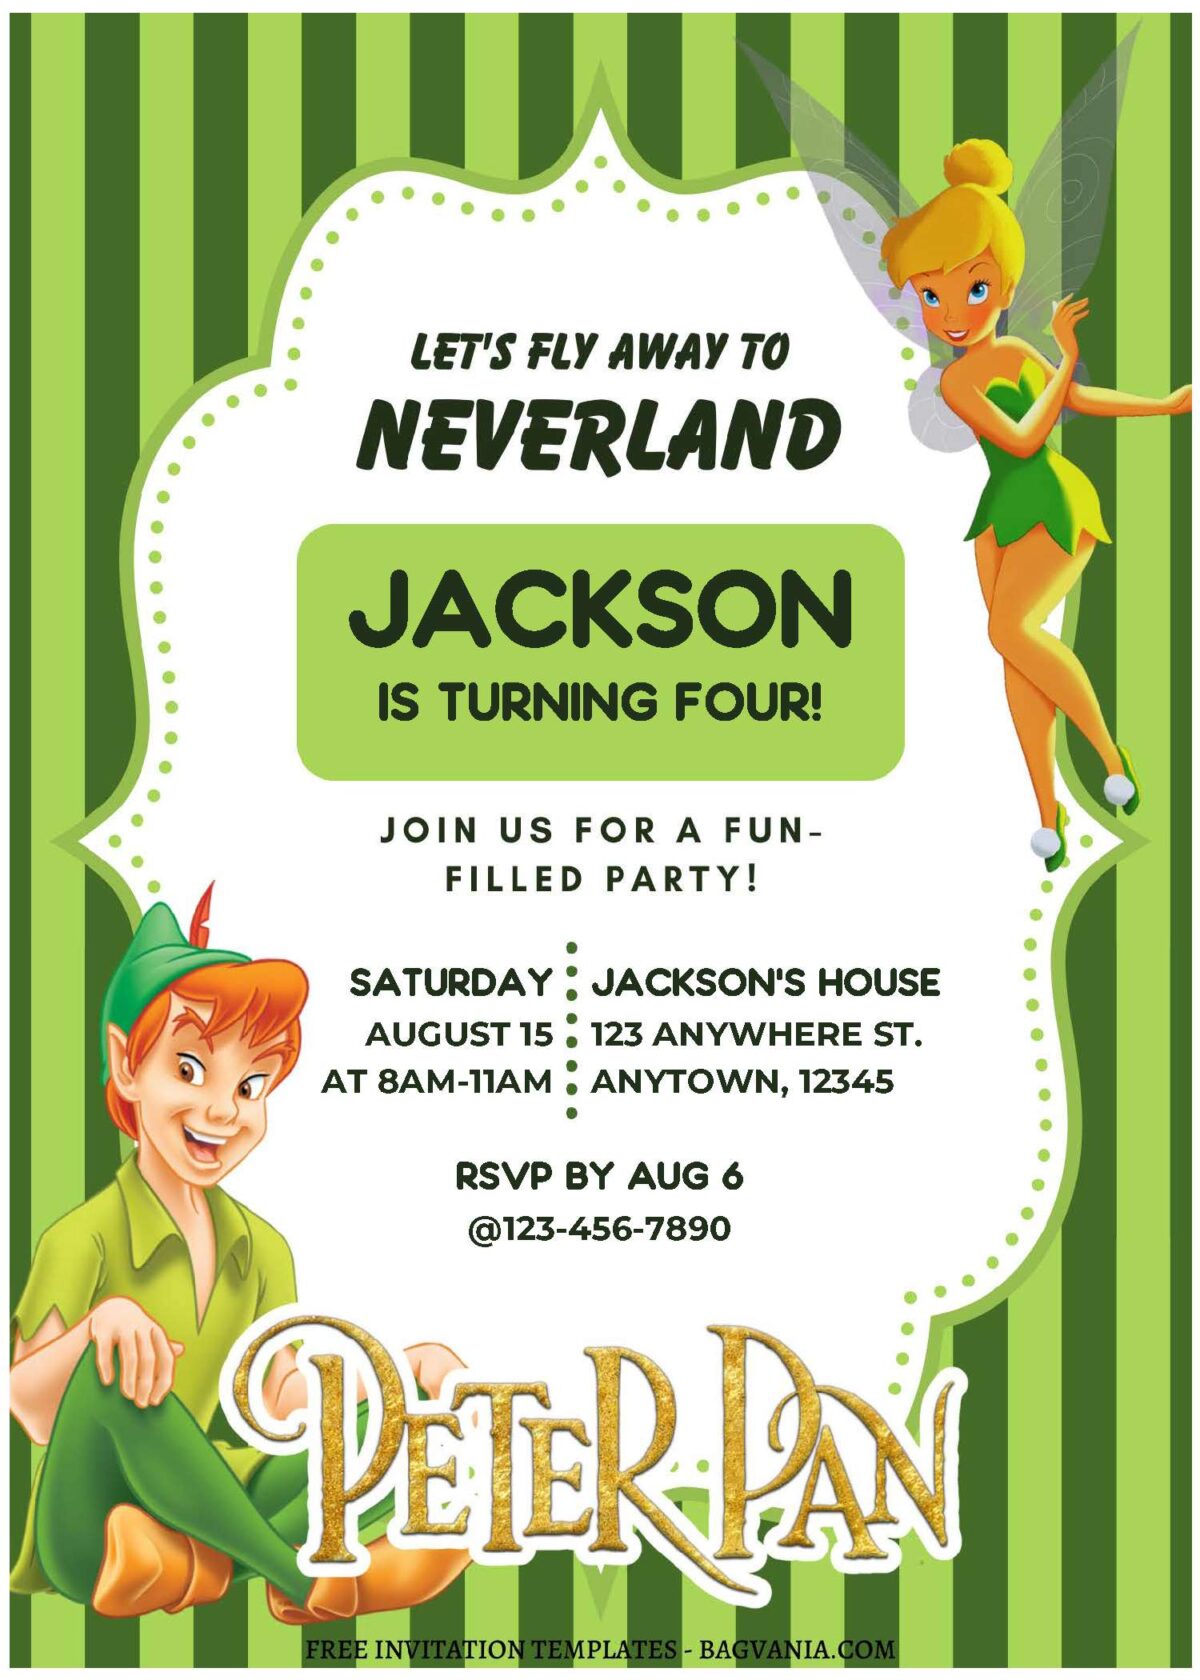 (Free Editable PDF) Peter Pan Wonderland Birthday Invitation Templates B